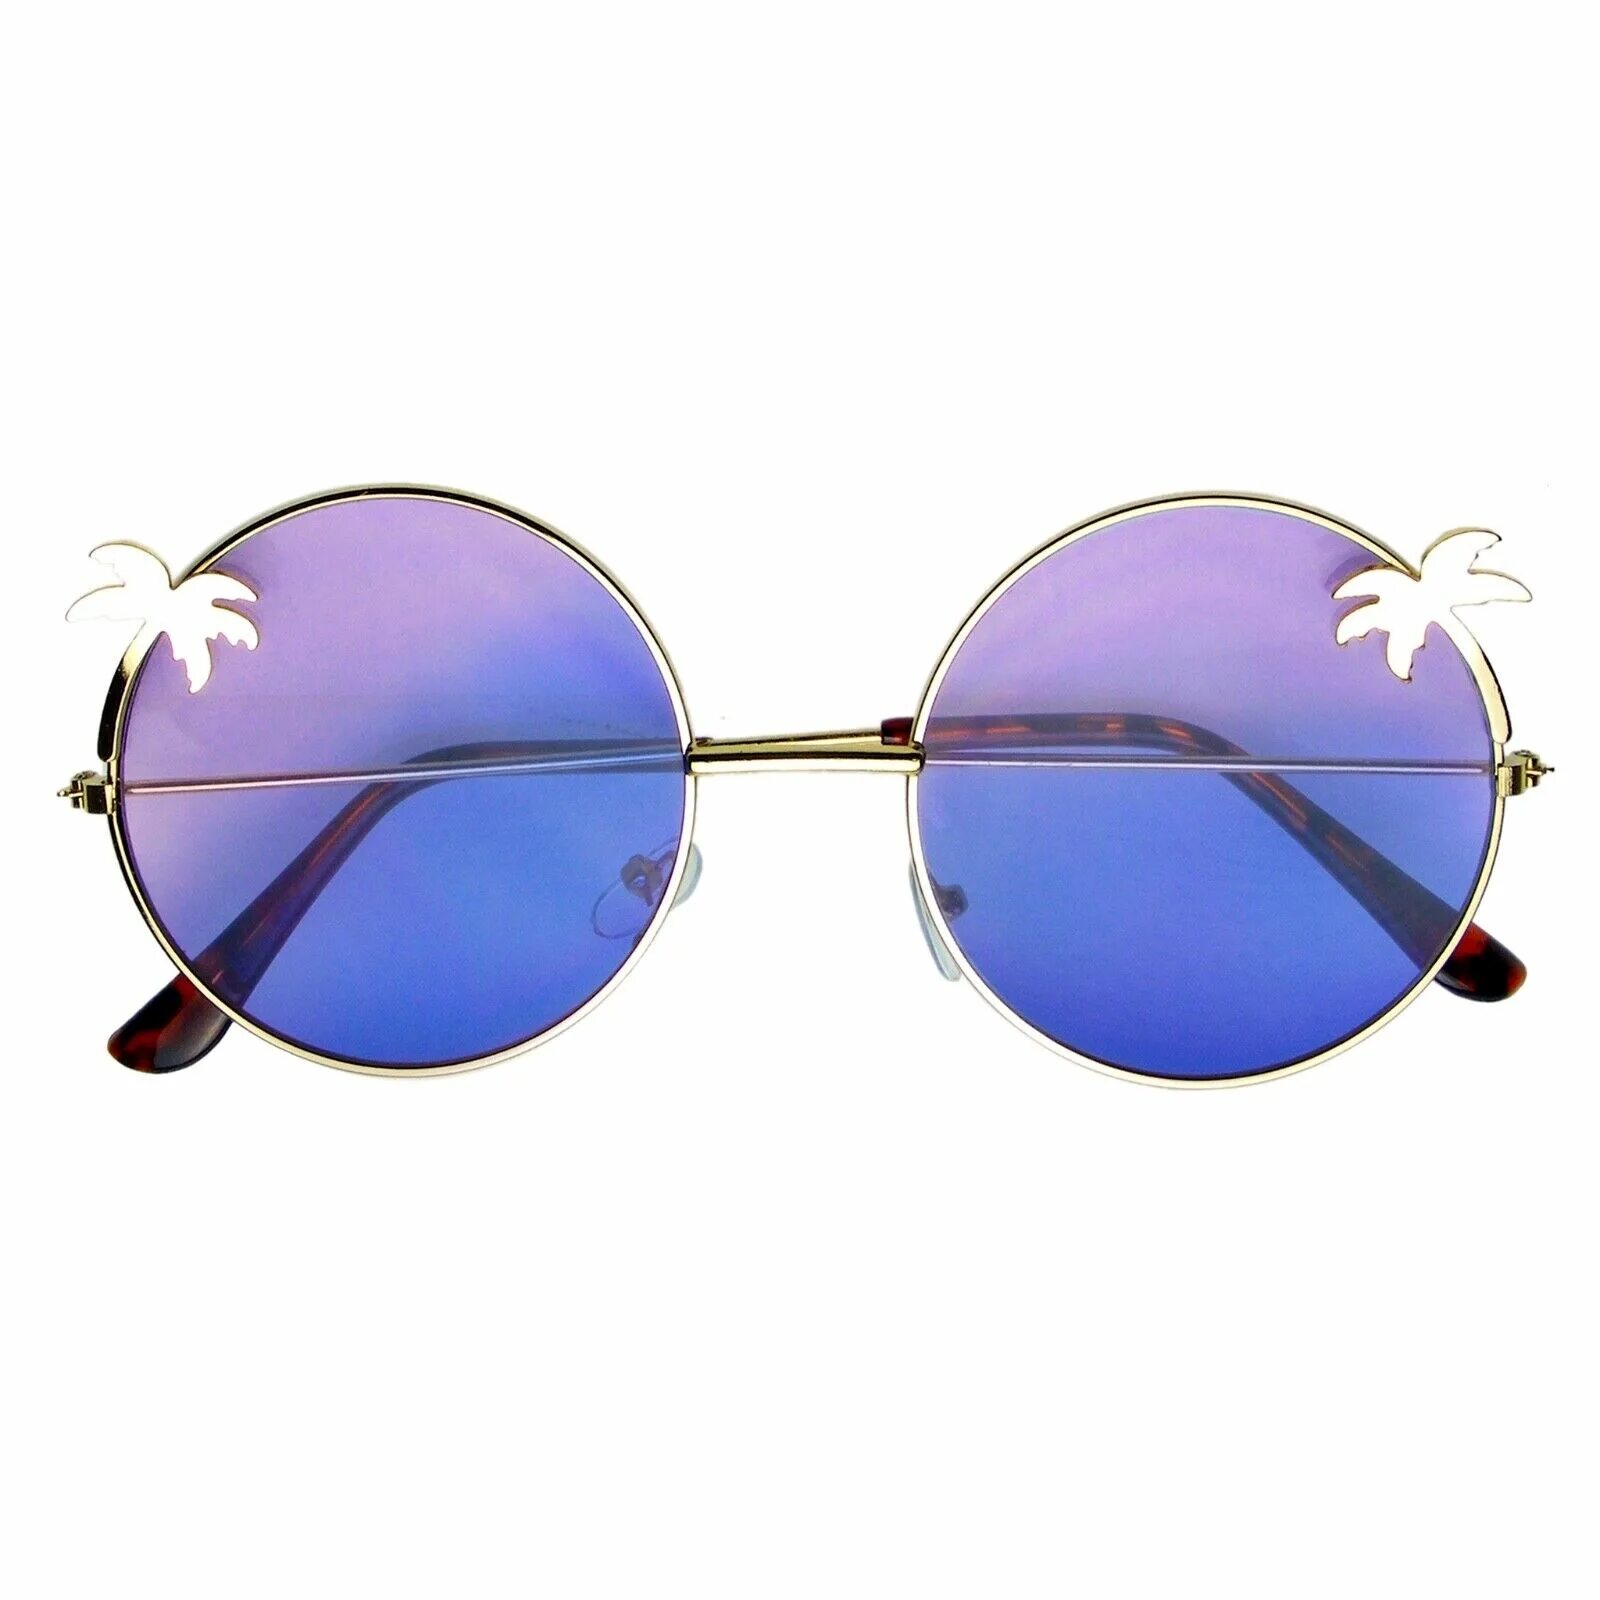 Round sunglasses. Круглые очки хиппи. Круглые солнцезащитные очки с градиентом. Солнечные очки хиппи. Винтажные круглые очки.